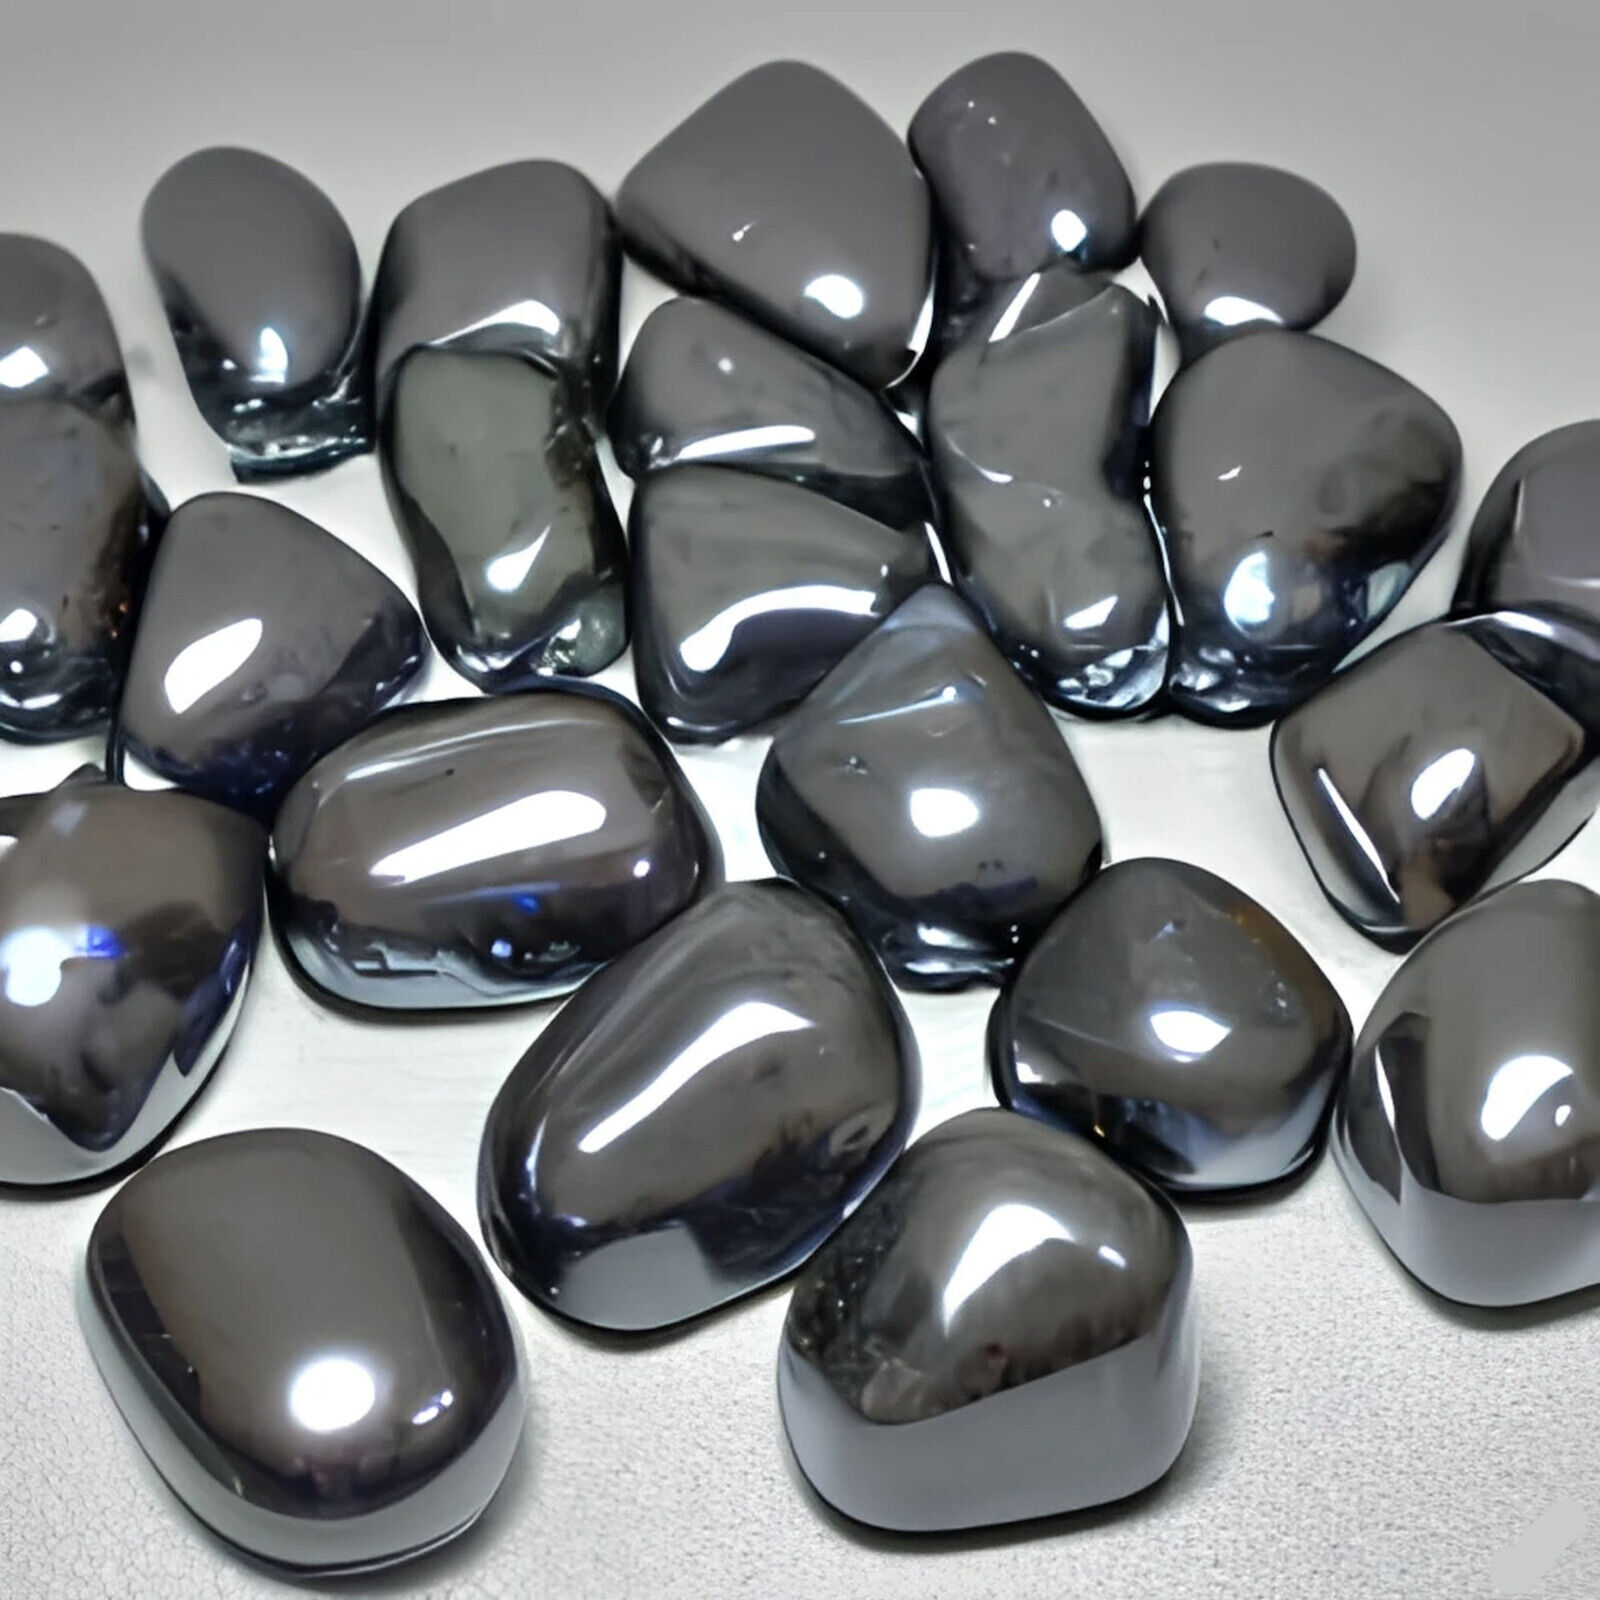 TUMBLED MAGNETIC HEMATITE * Shiny Large Size Iron Ore Mineral * 5-8 pcs / Lb.